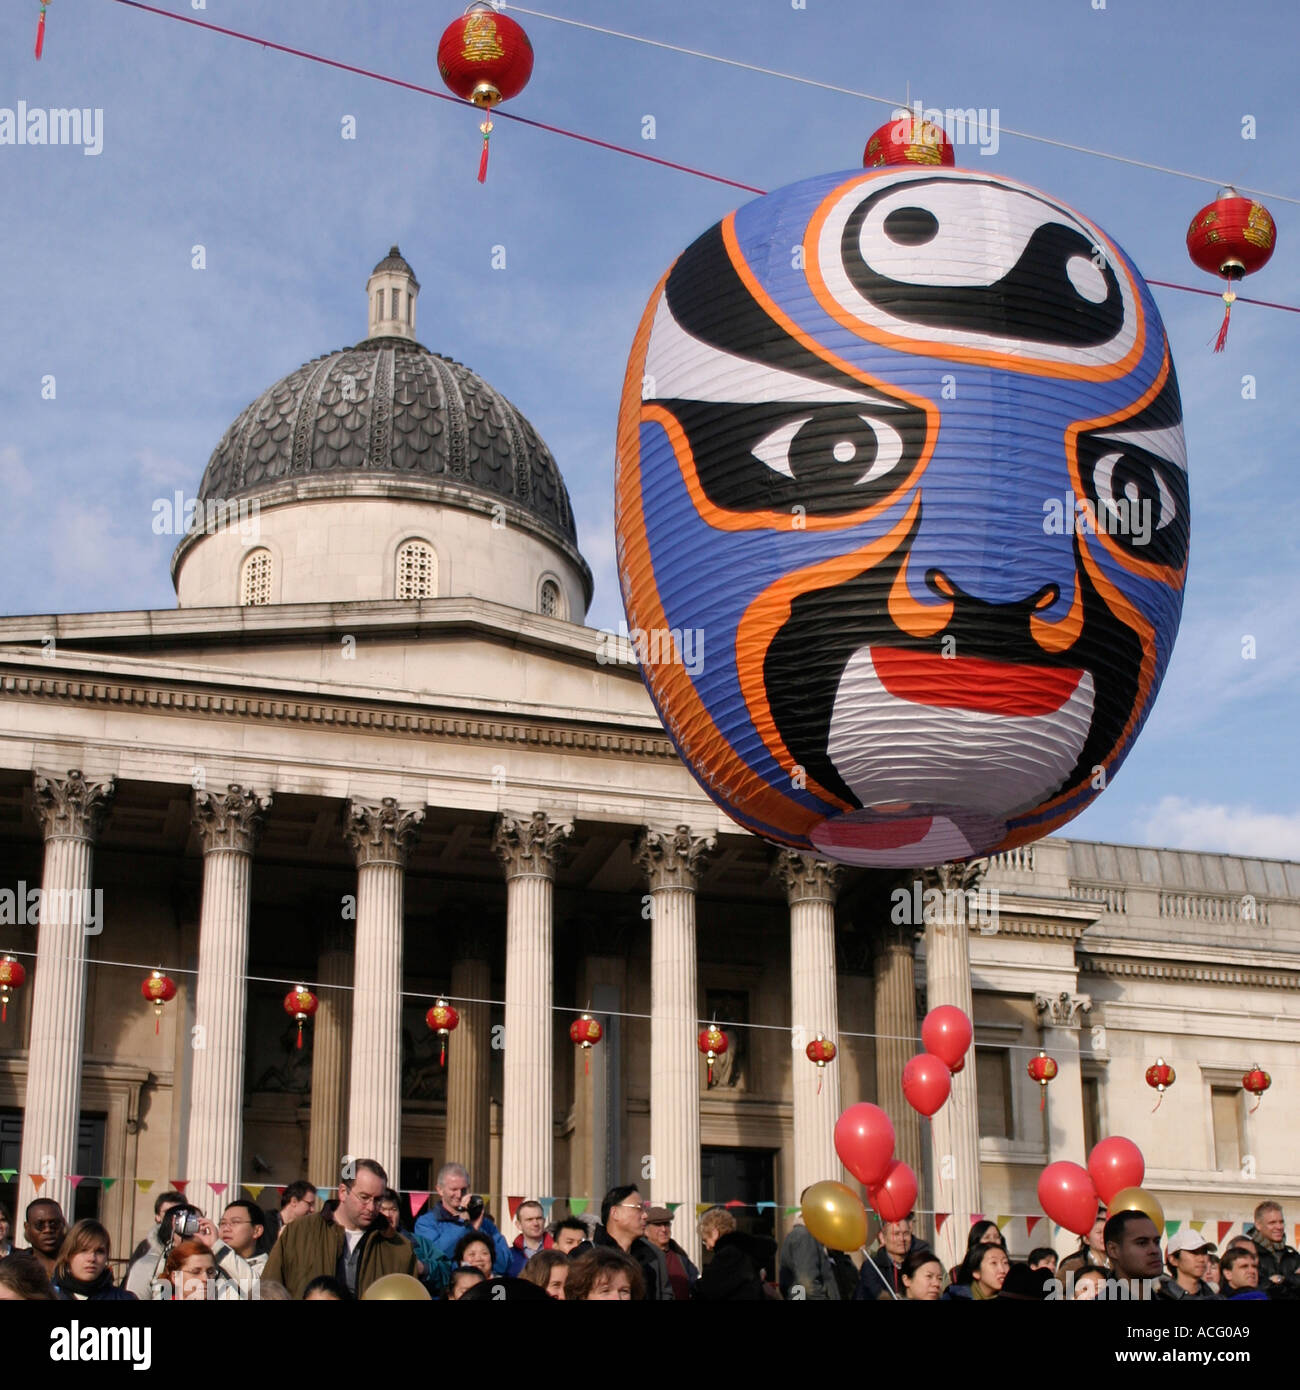 Lanterne, foule et Musée national du portrait au Nouvel An chinois. Trafalgar Square, Londres, Angleterre Banque D'Images